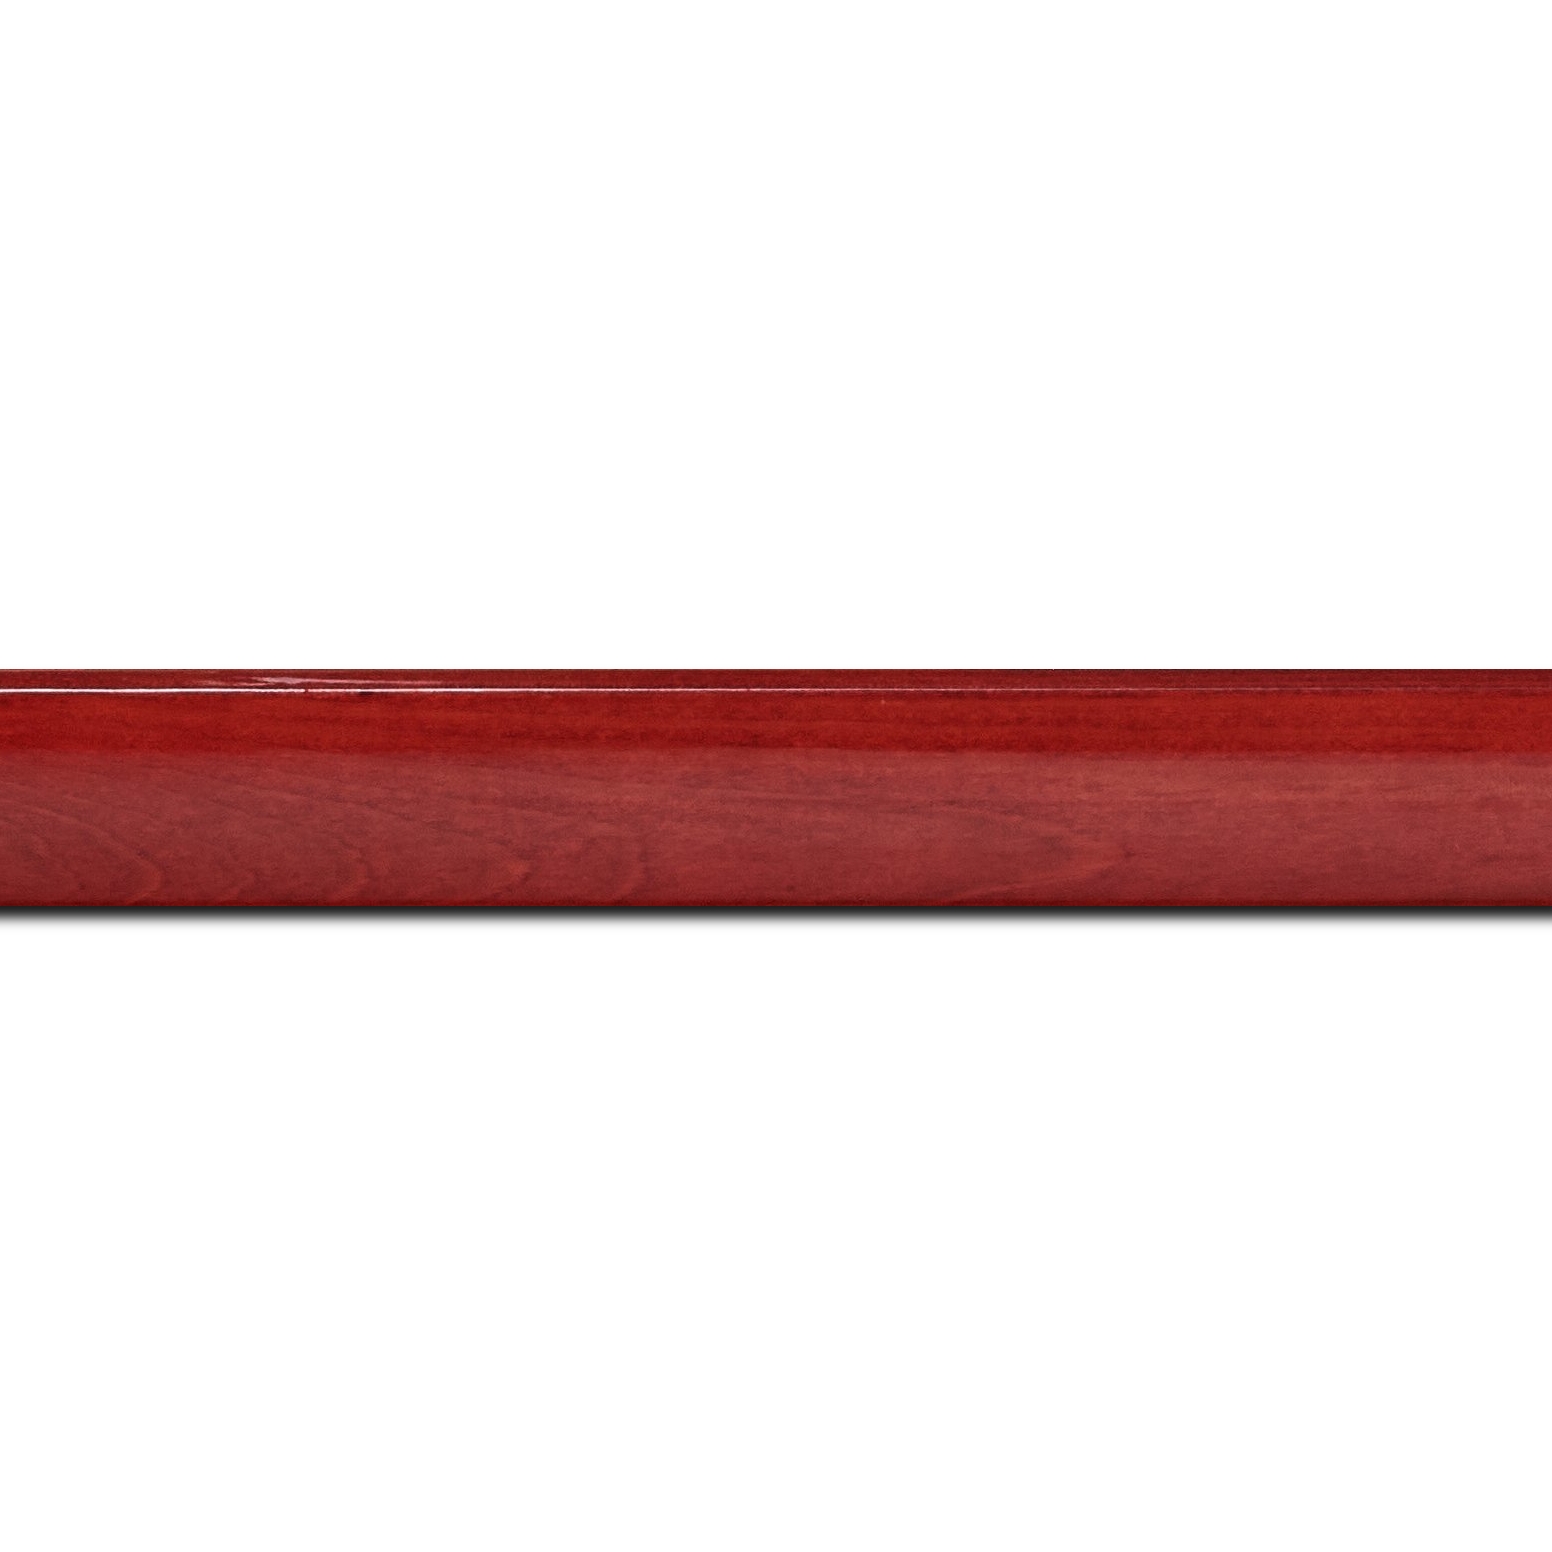 Baguette longueur 1.40m bois profil arrondi en pente plongeant largeur 2.4cm couleur rouge cerise finition vernis brillant,veine du bois  apparent (pin) ,